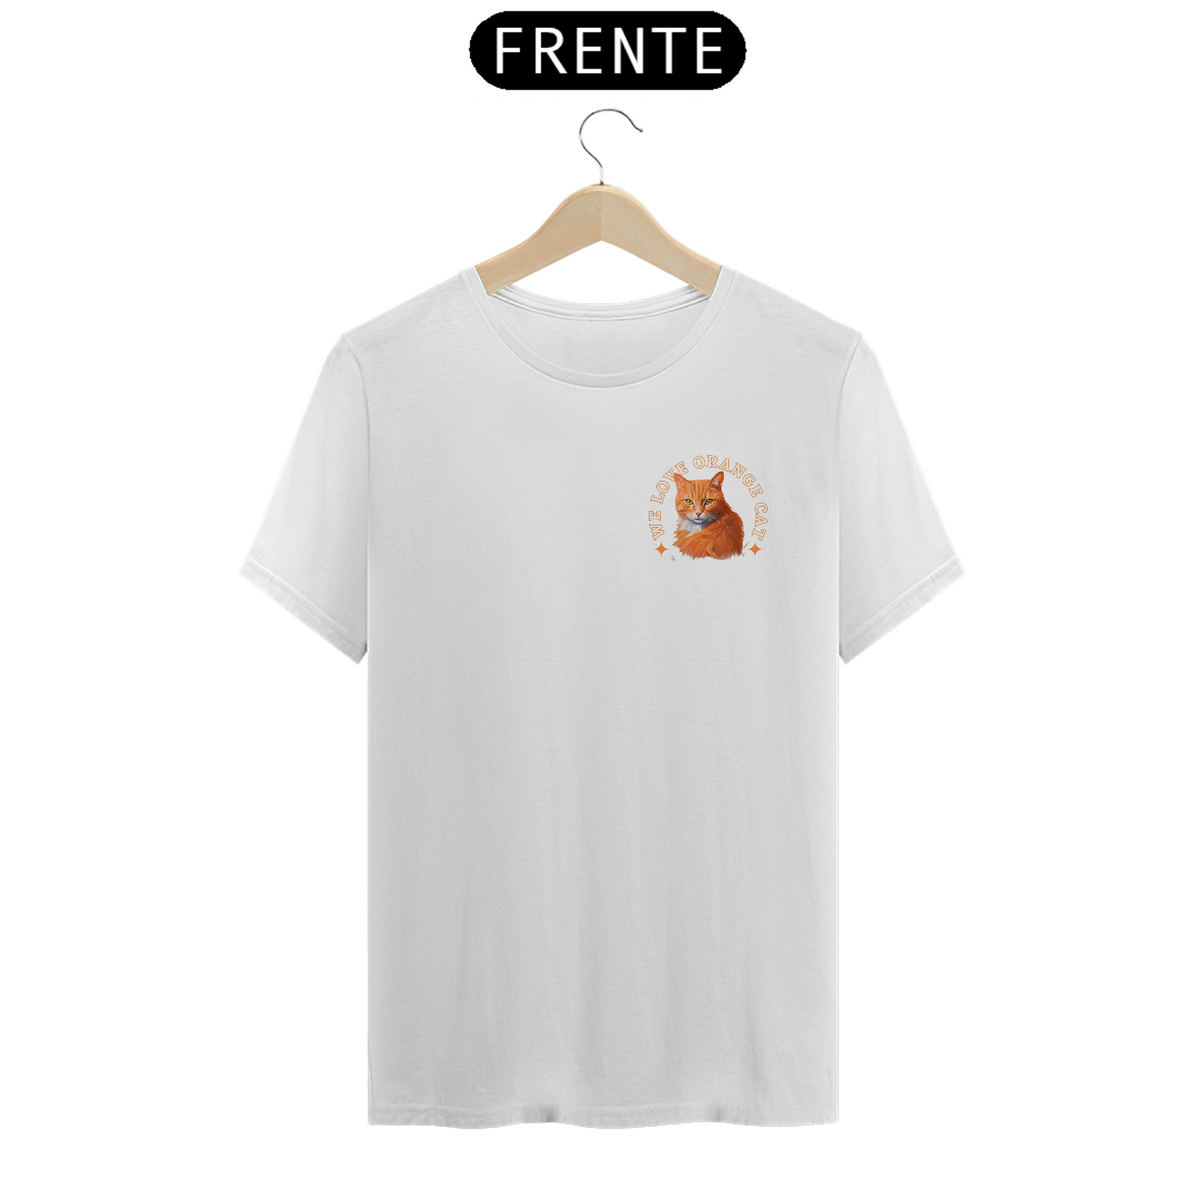 Nome do produto: Camiseta - We Love Orange Cat